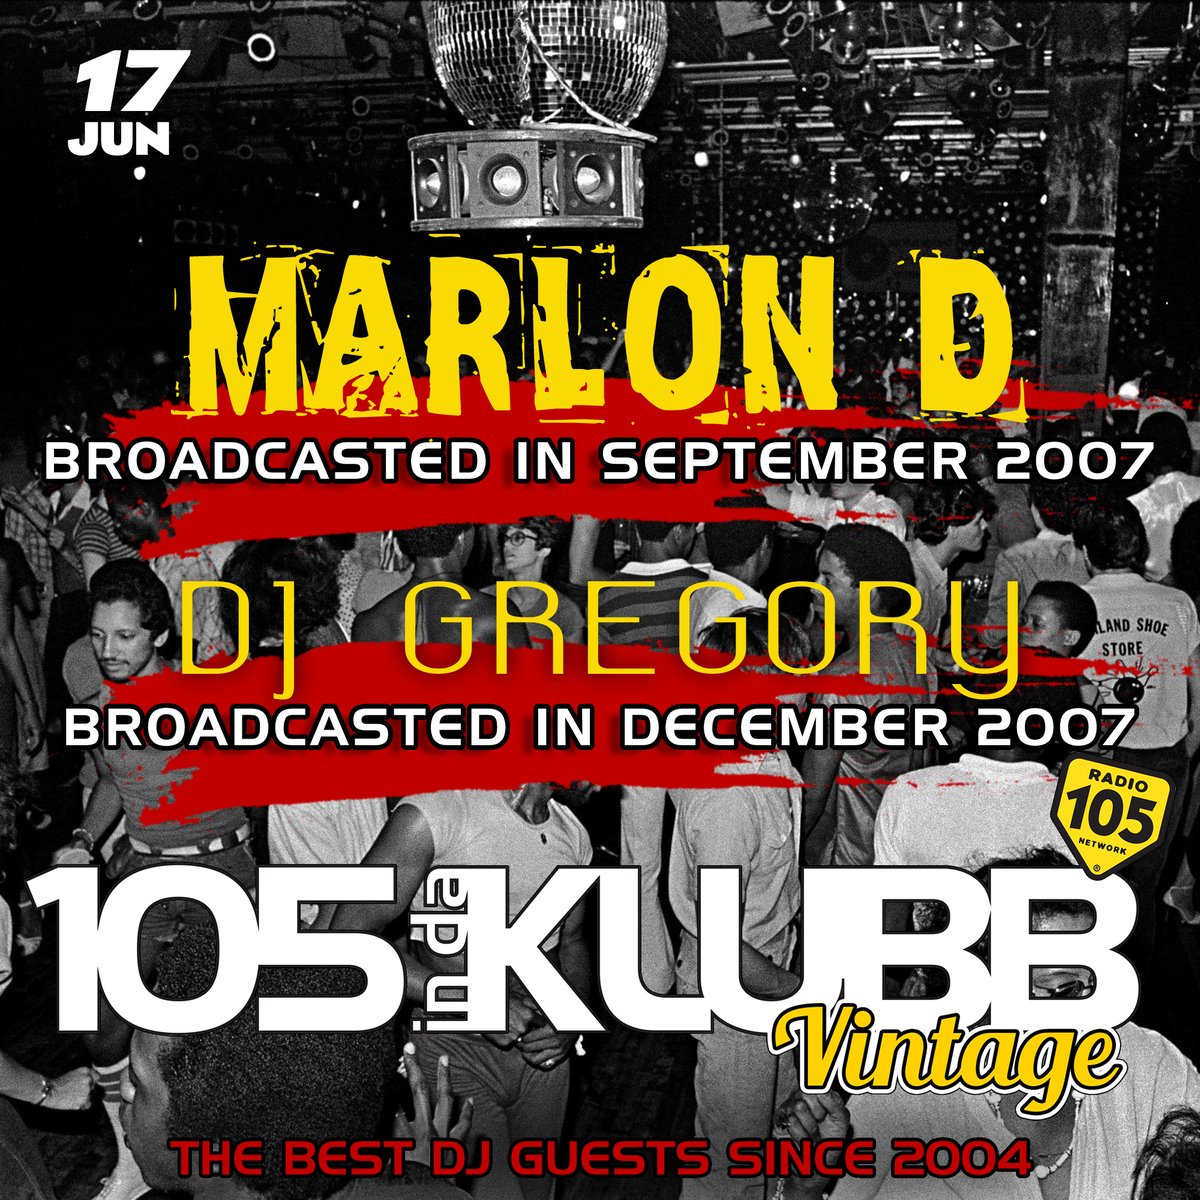 ☑ #MarloD + #DjGregory 
on #105INDAKLUBBVINTAGE!
➖
Questo weekend con @andreabellidj 
e con i mixati dei Top Dj Internazionali 
che hanno fatto la storia di #105INDAKLUBB
➖
#WEAREINDAKLUBB
La notte dance firmata 
@Radio105 💥